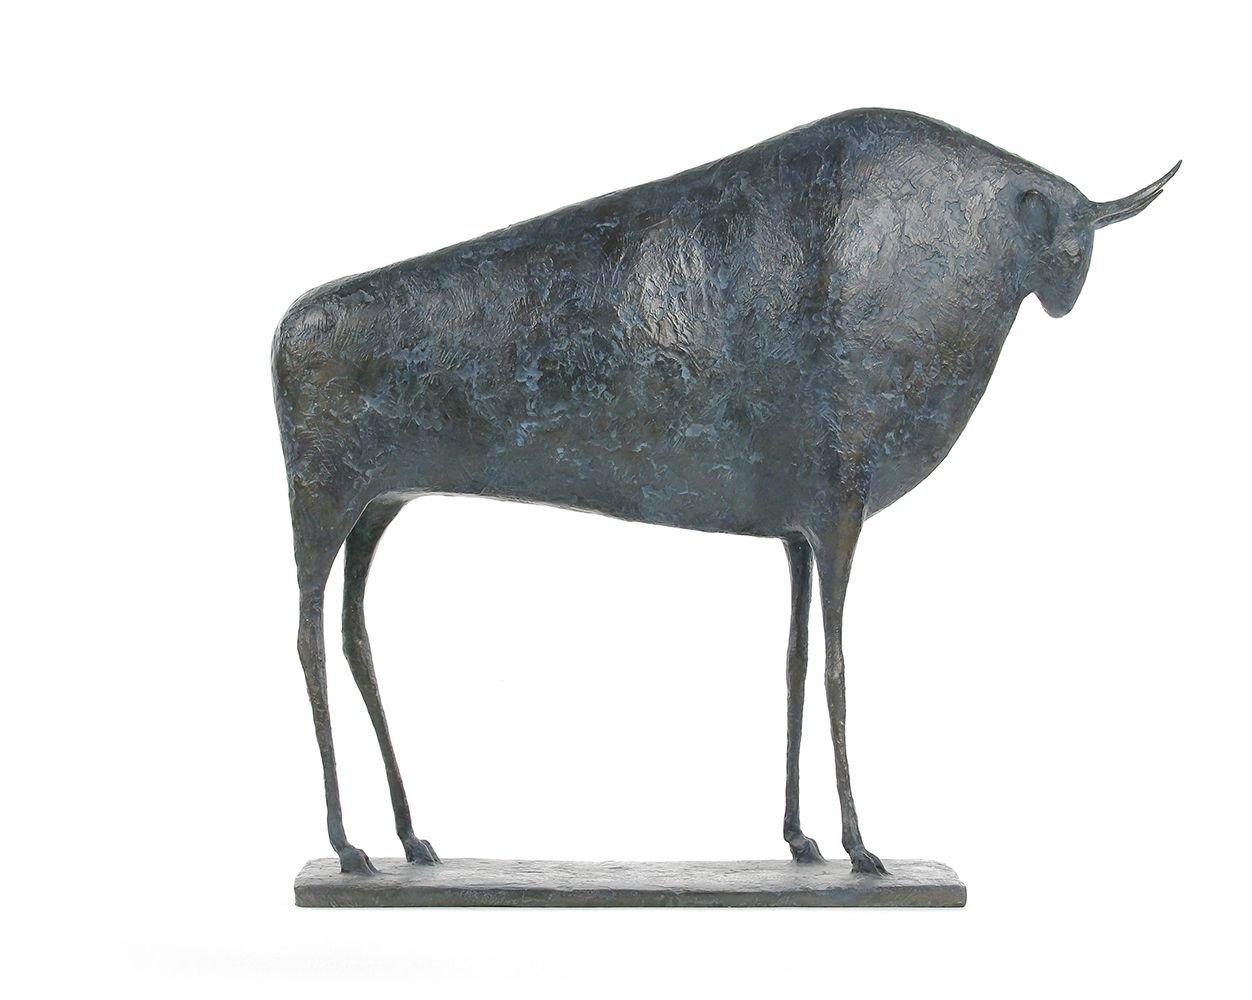 Stier VI (Taureau VI) des französischen zeitgenössischen Künstlers Pierre Yermia. Bronzeskulptur, 54 × 47 × 15 cm.
Signiert und nummeriert. Limitierte Auflage von 8 Exemplaren und 4 Künstlerabzügen.
"Der Stier ist das einzige männliche Tier in